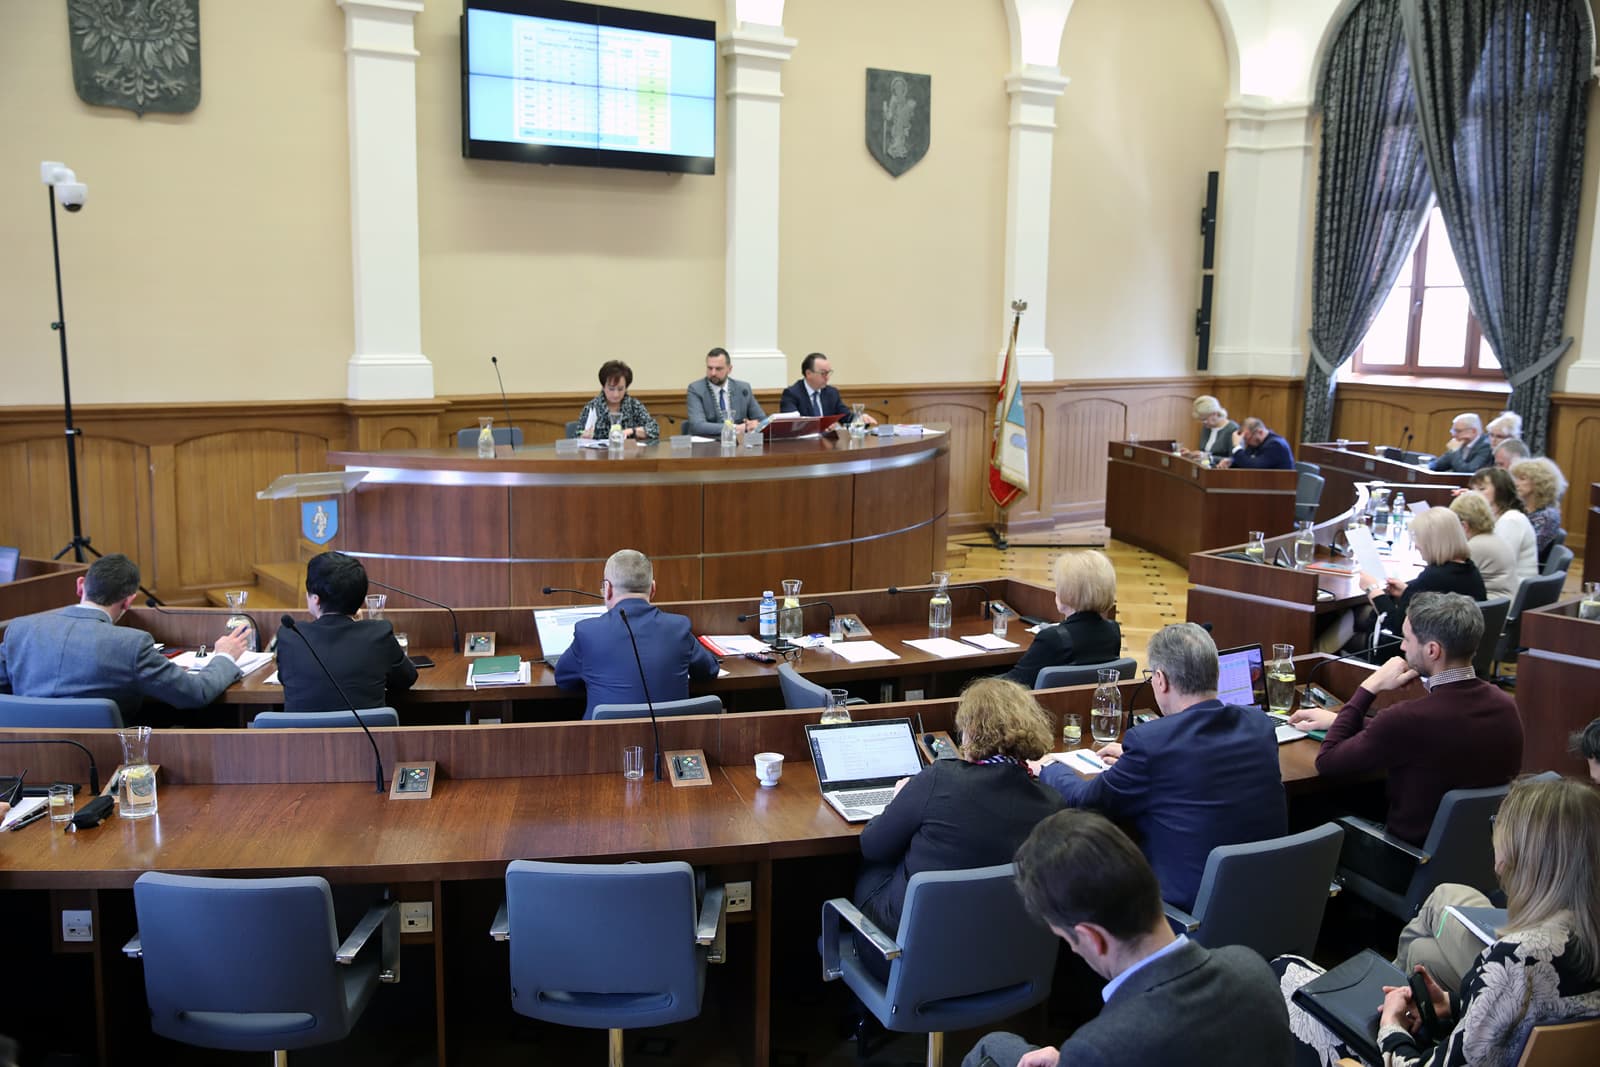 Władze rezygnują? Nie będzie tegorocznych konsultacji Olsztyńskiego Budżetu Obywatelskiego finanse Olsztyn, Wiadomości